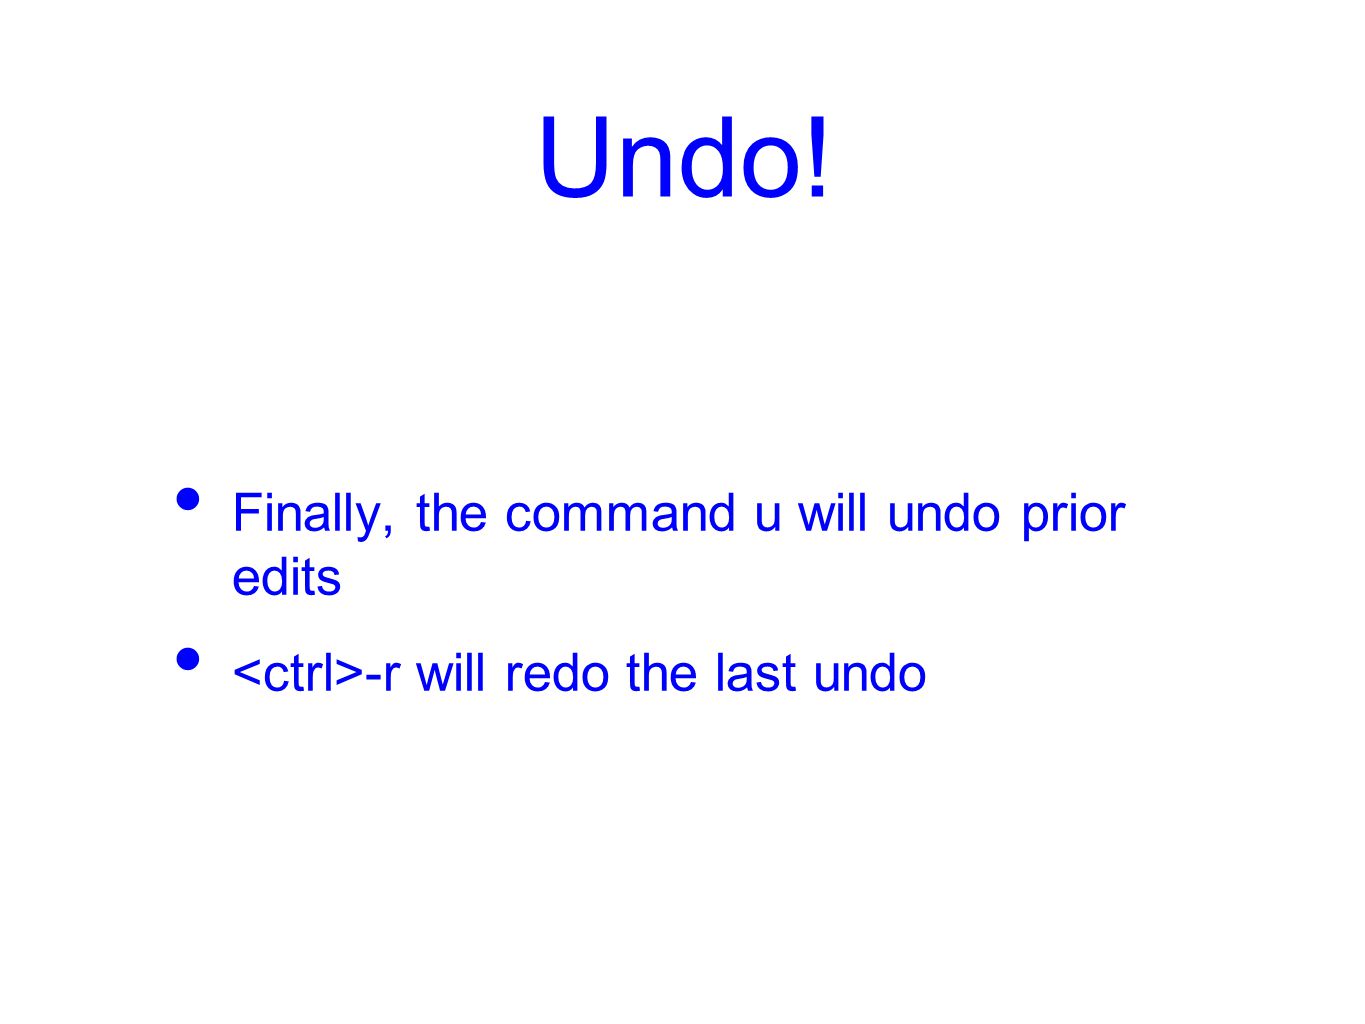 Undo! Finally, the command u will undo prior edits -r will redo the last undo